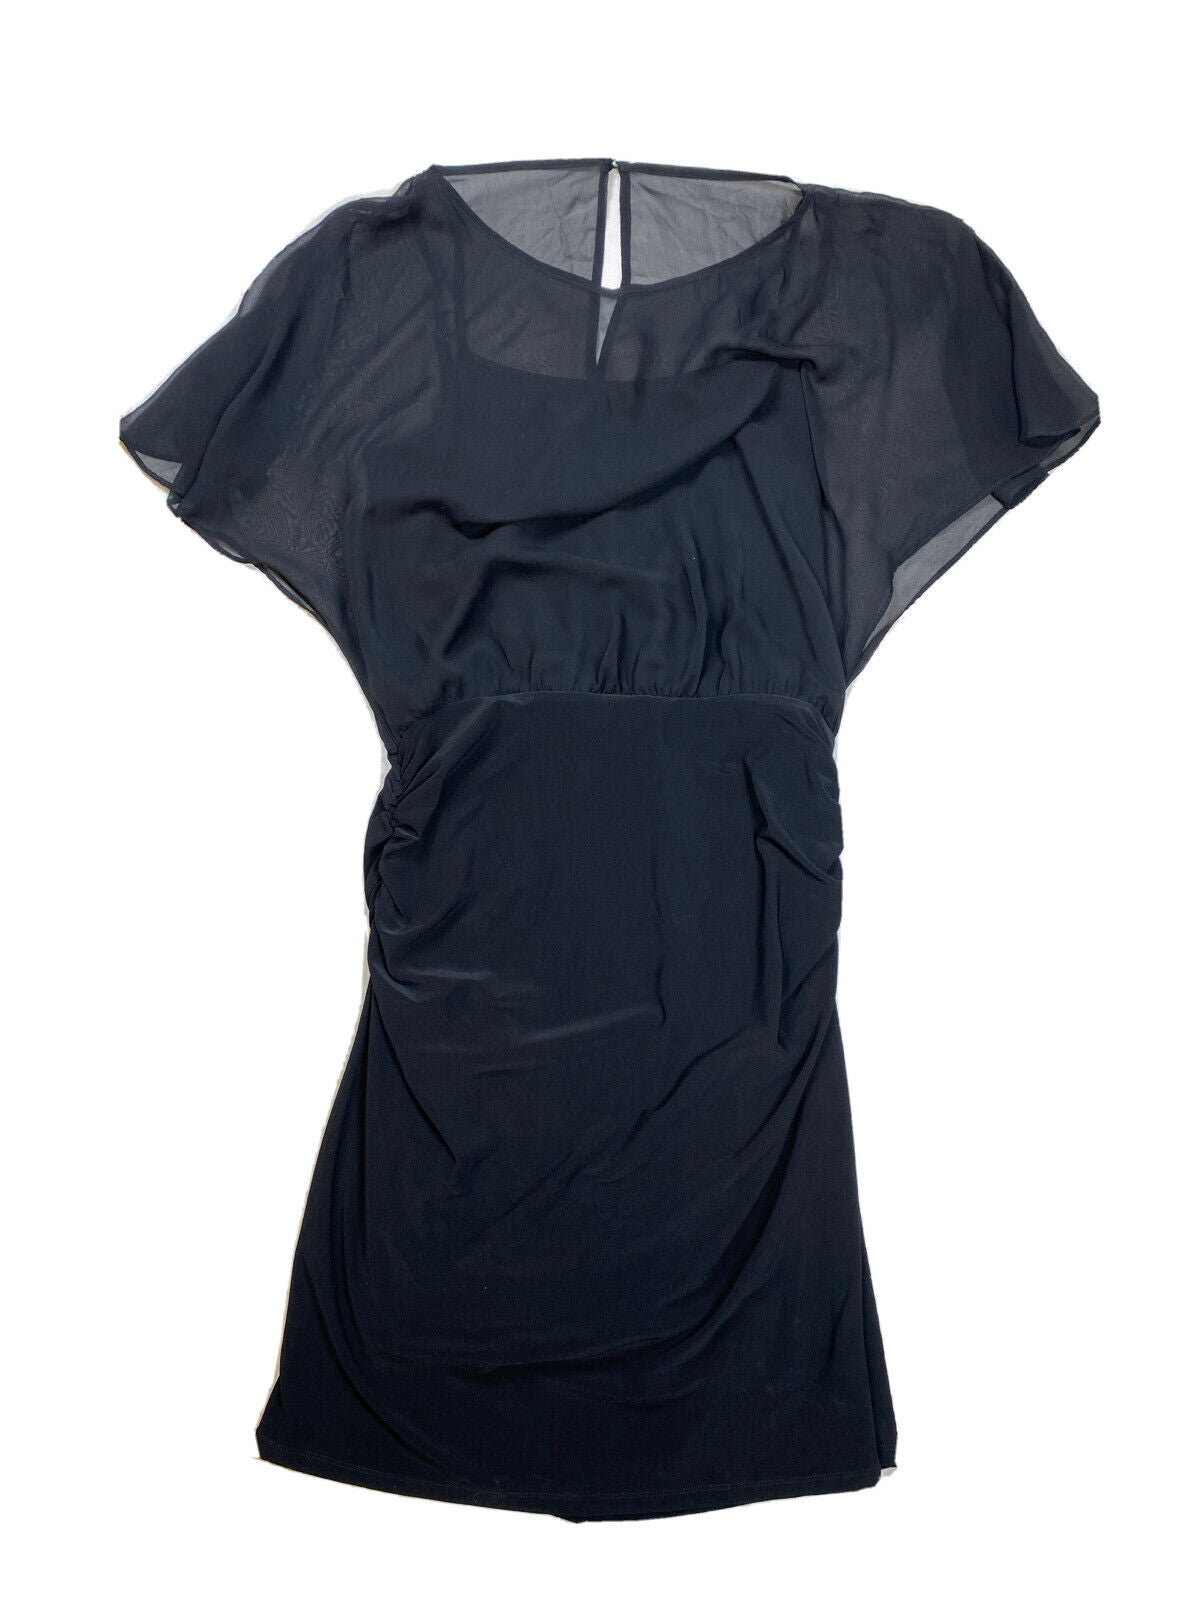 NEW White House Black Market Women's Black Flutter Sleeve Sheath Dress -S